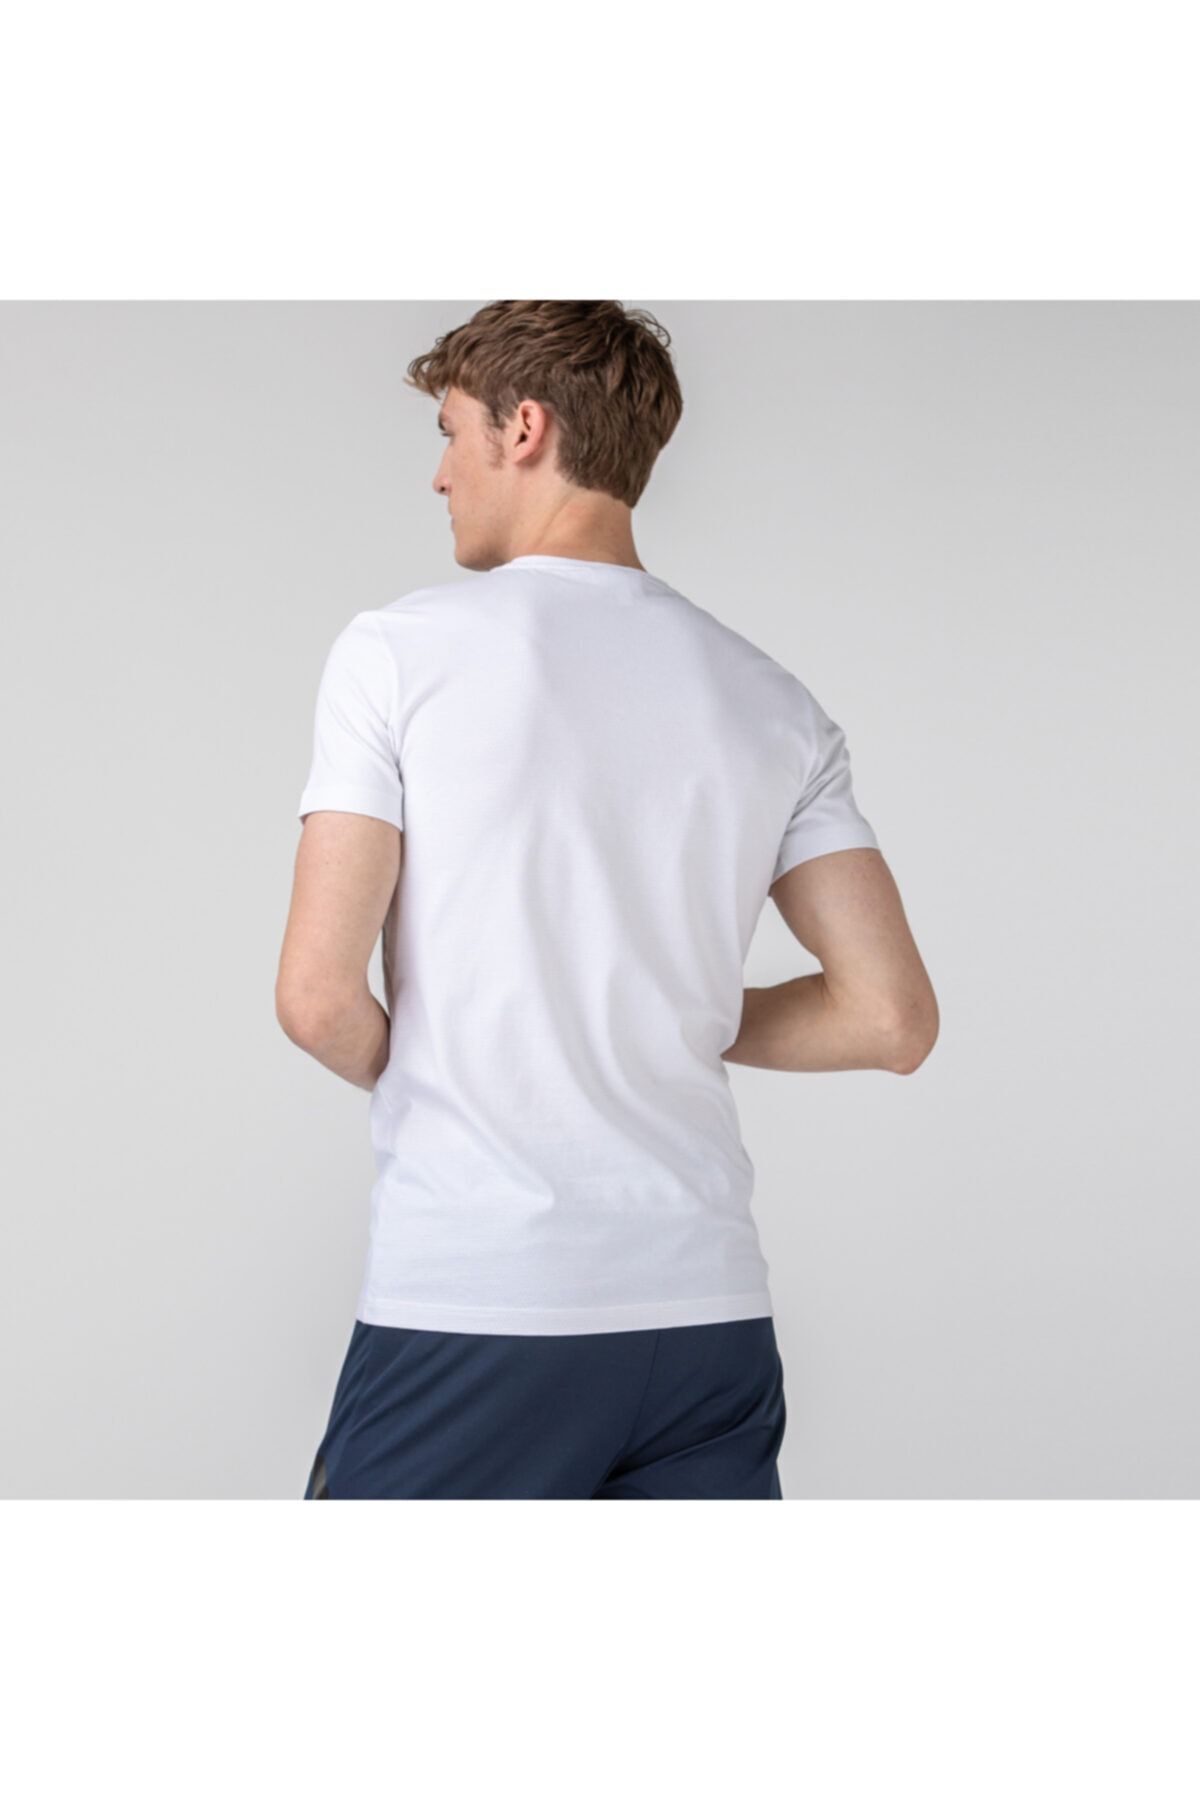 Lacoste تی شرت سفید باریک مردانه TH0899